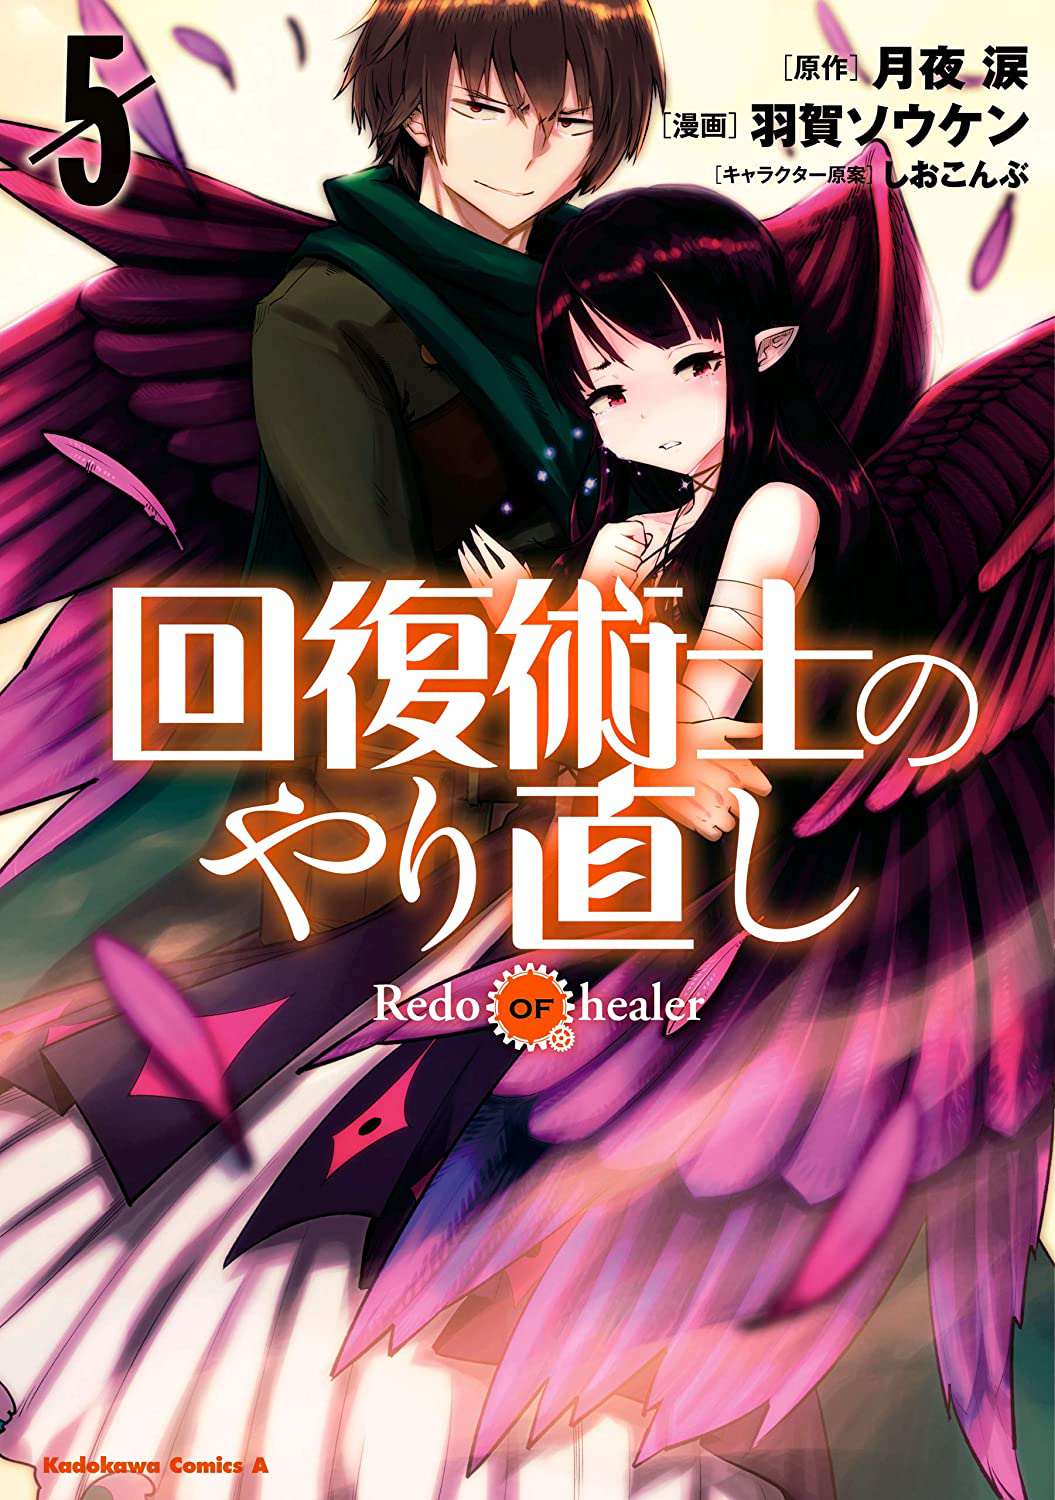 Quando Será Lançada a 2ª Temporada de Kaifuku (Redo of Healer)? - Manga  Livre RS